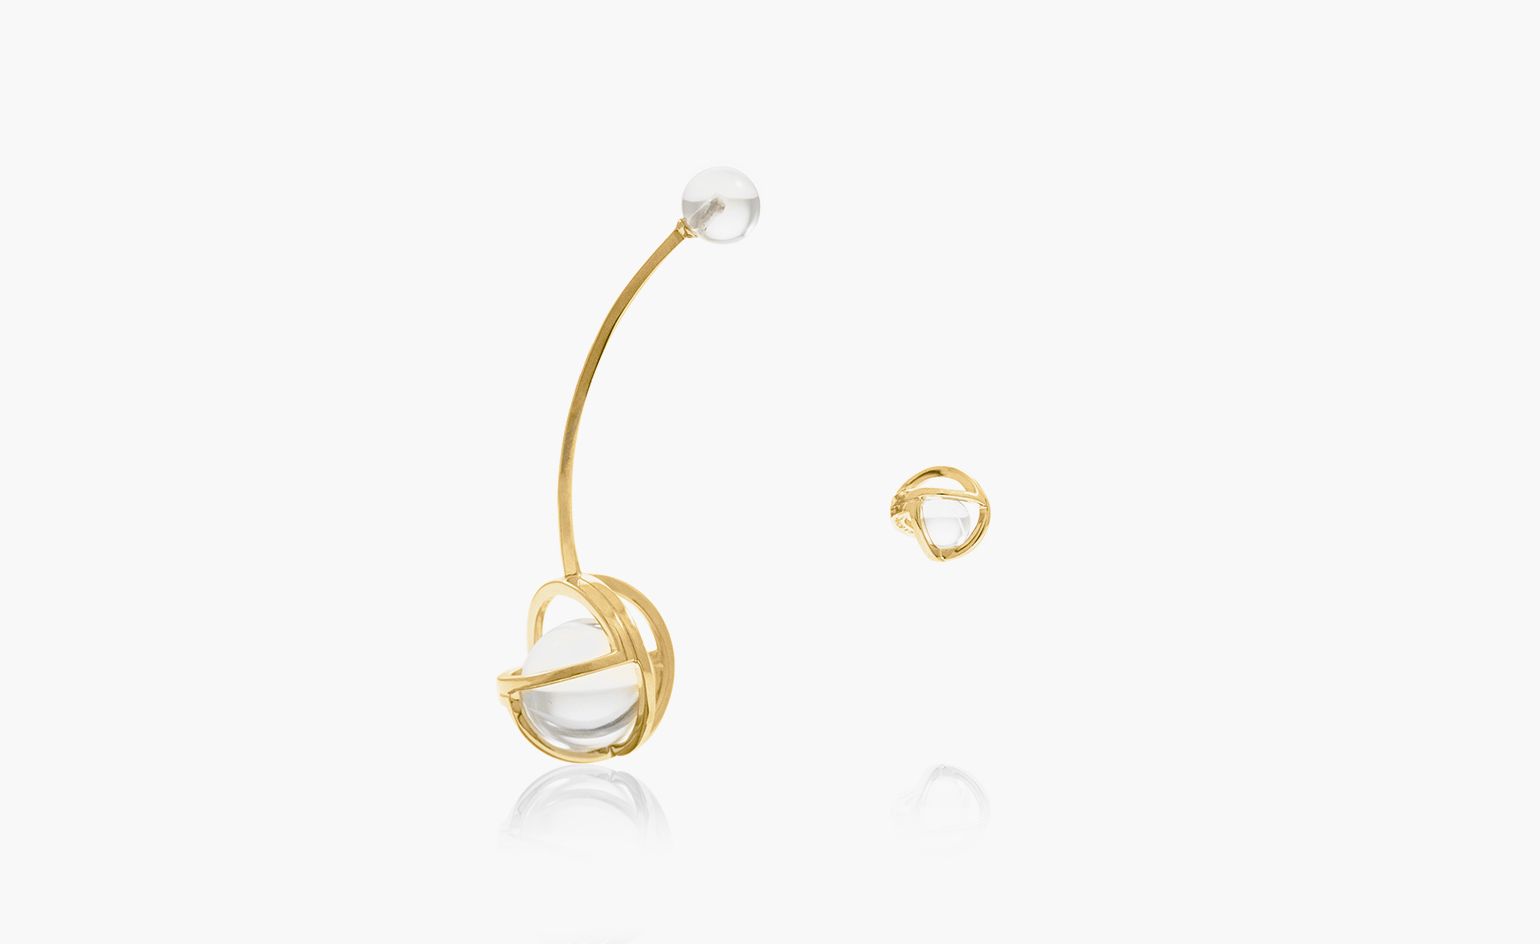 Asymmetric earrings swing into the fine jewellery cabinet | Wallpaper